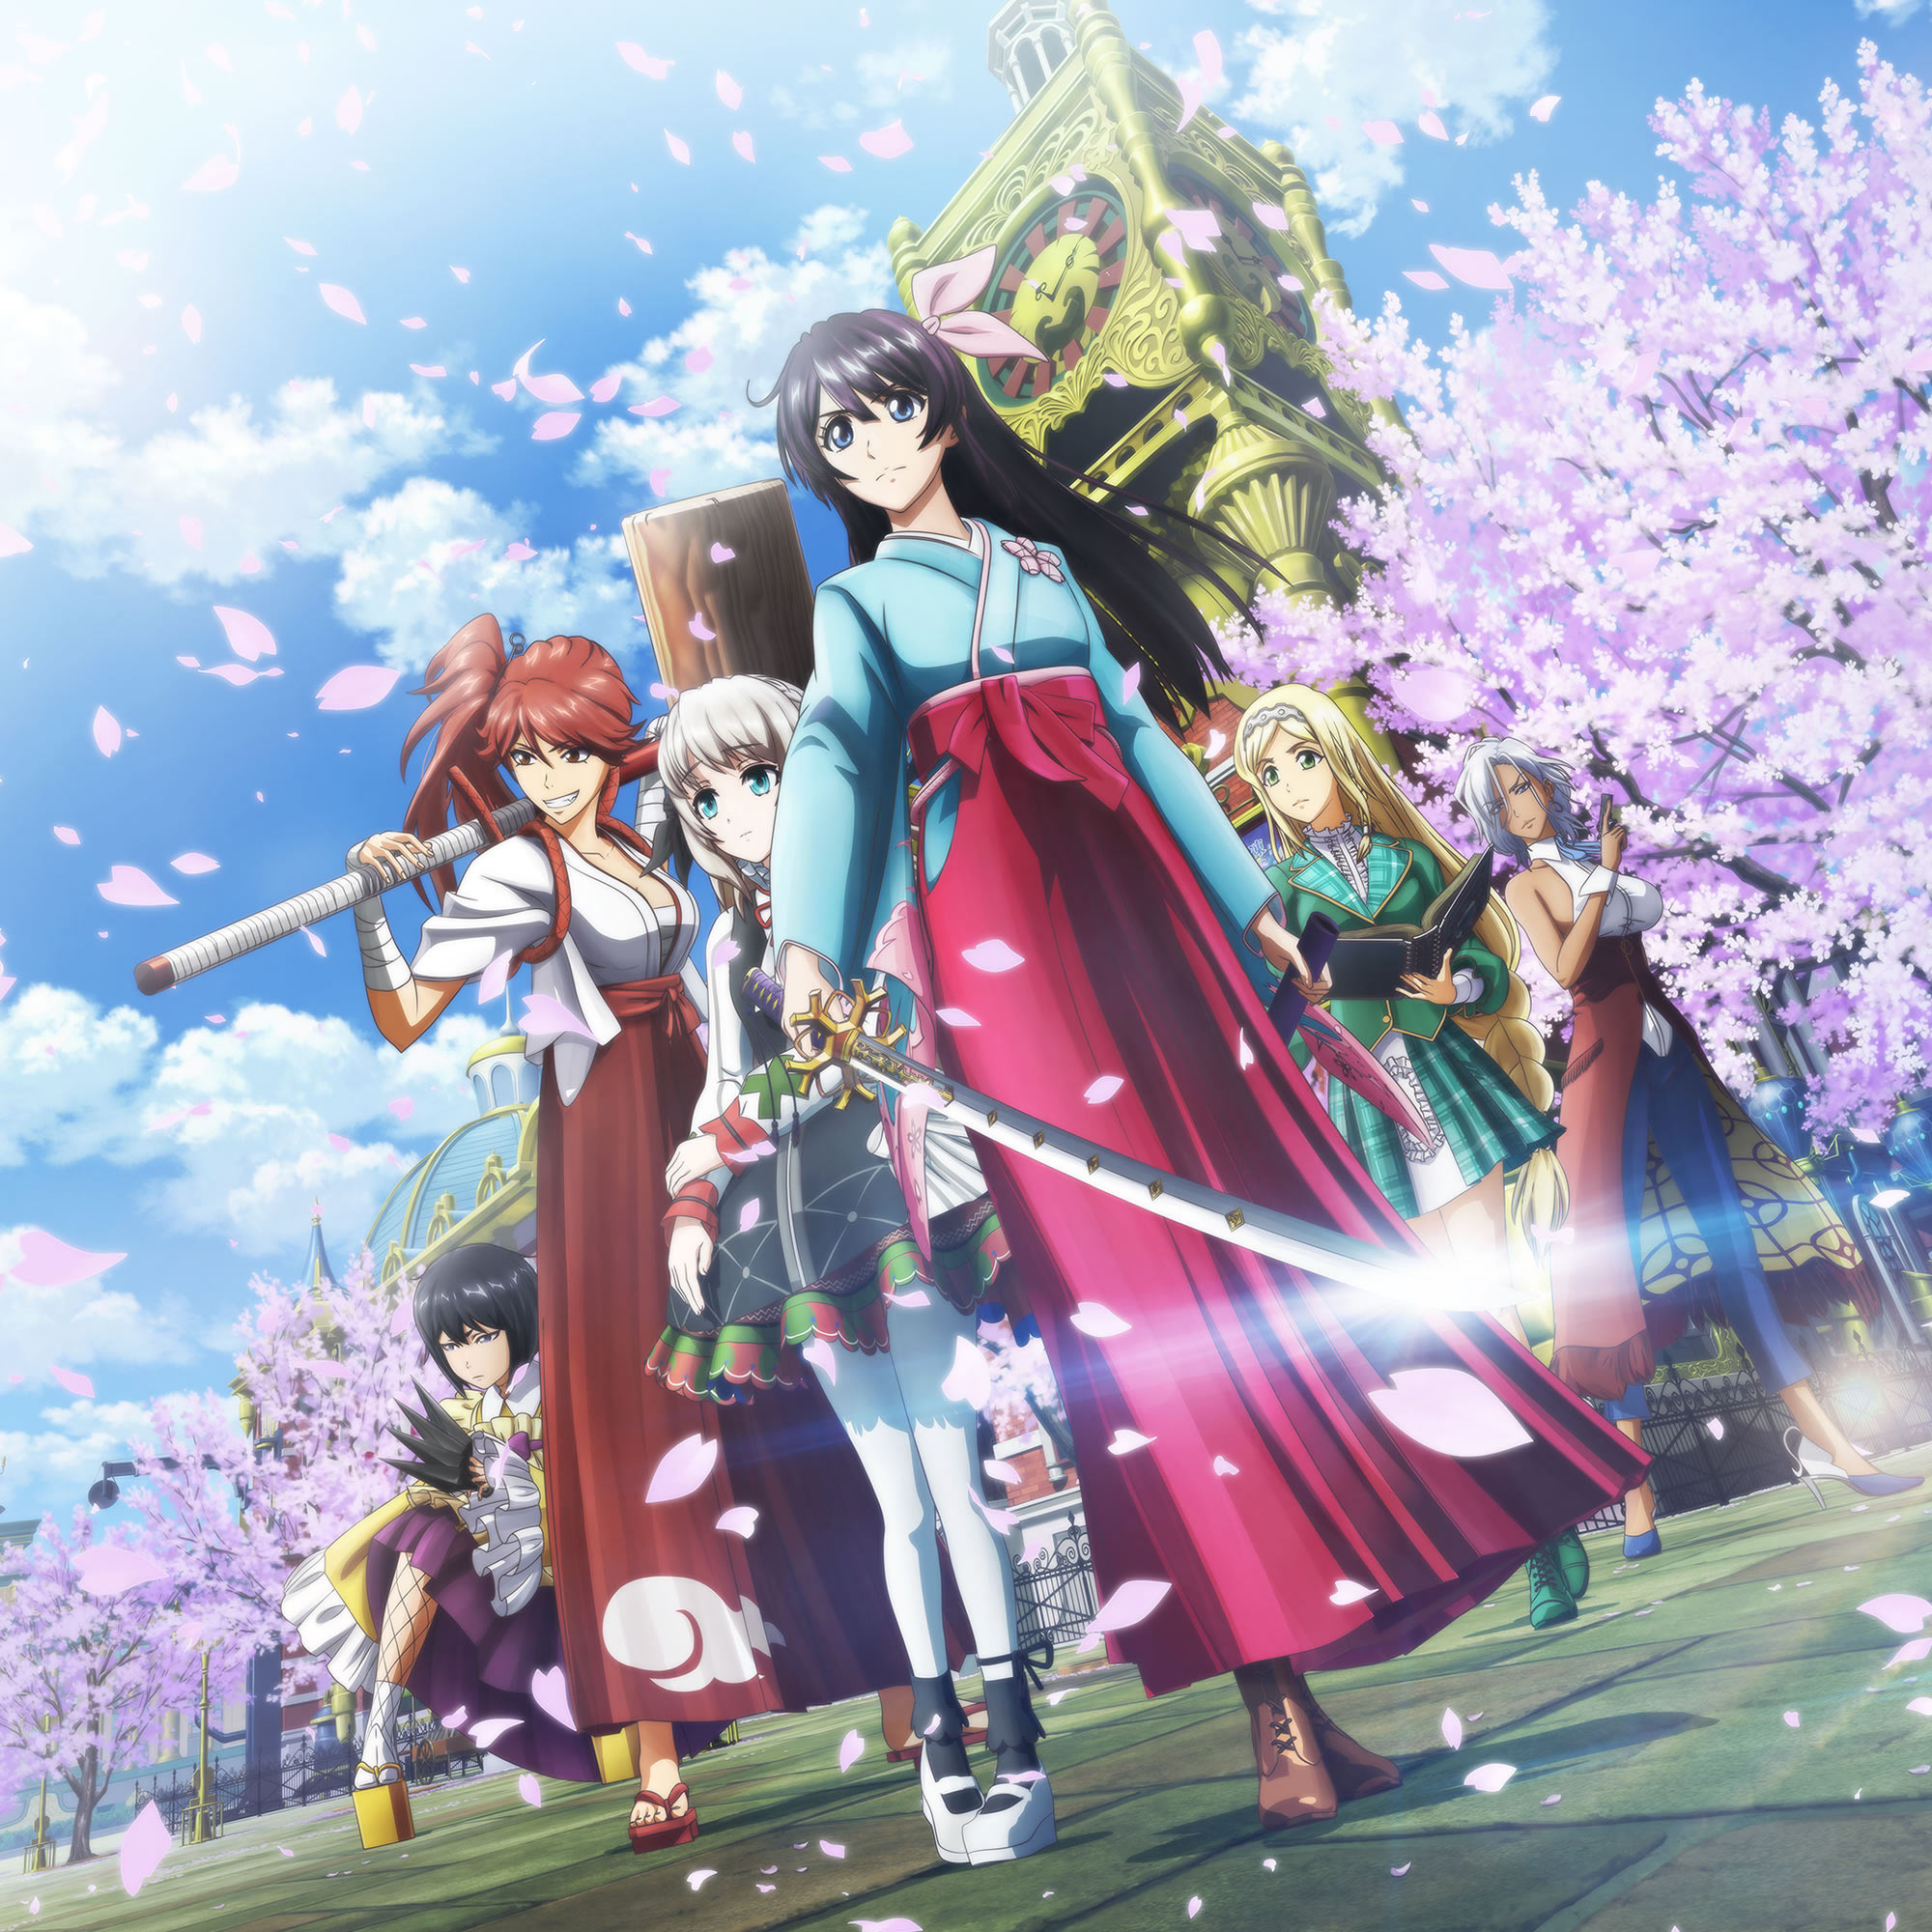 Показы аниме по мотивам «Войн Сакуры» начнутся 3 апреля